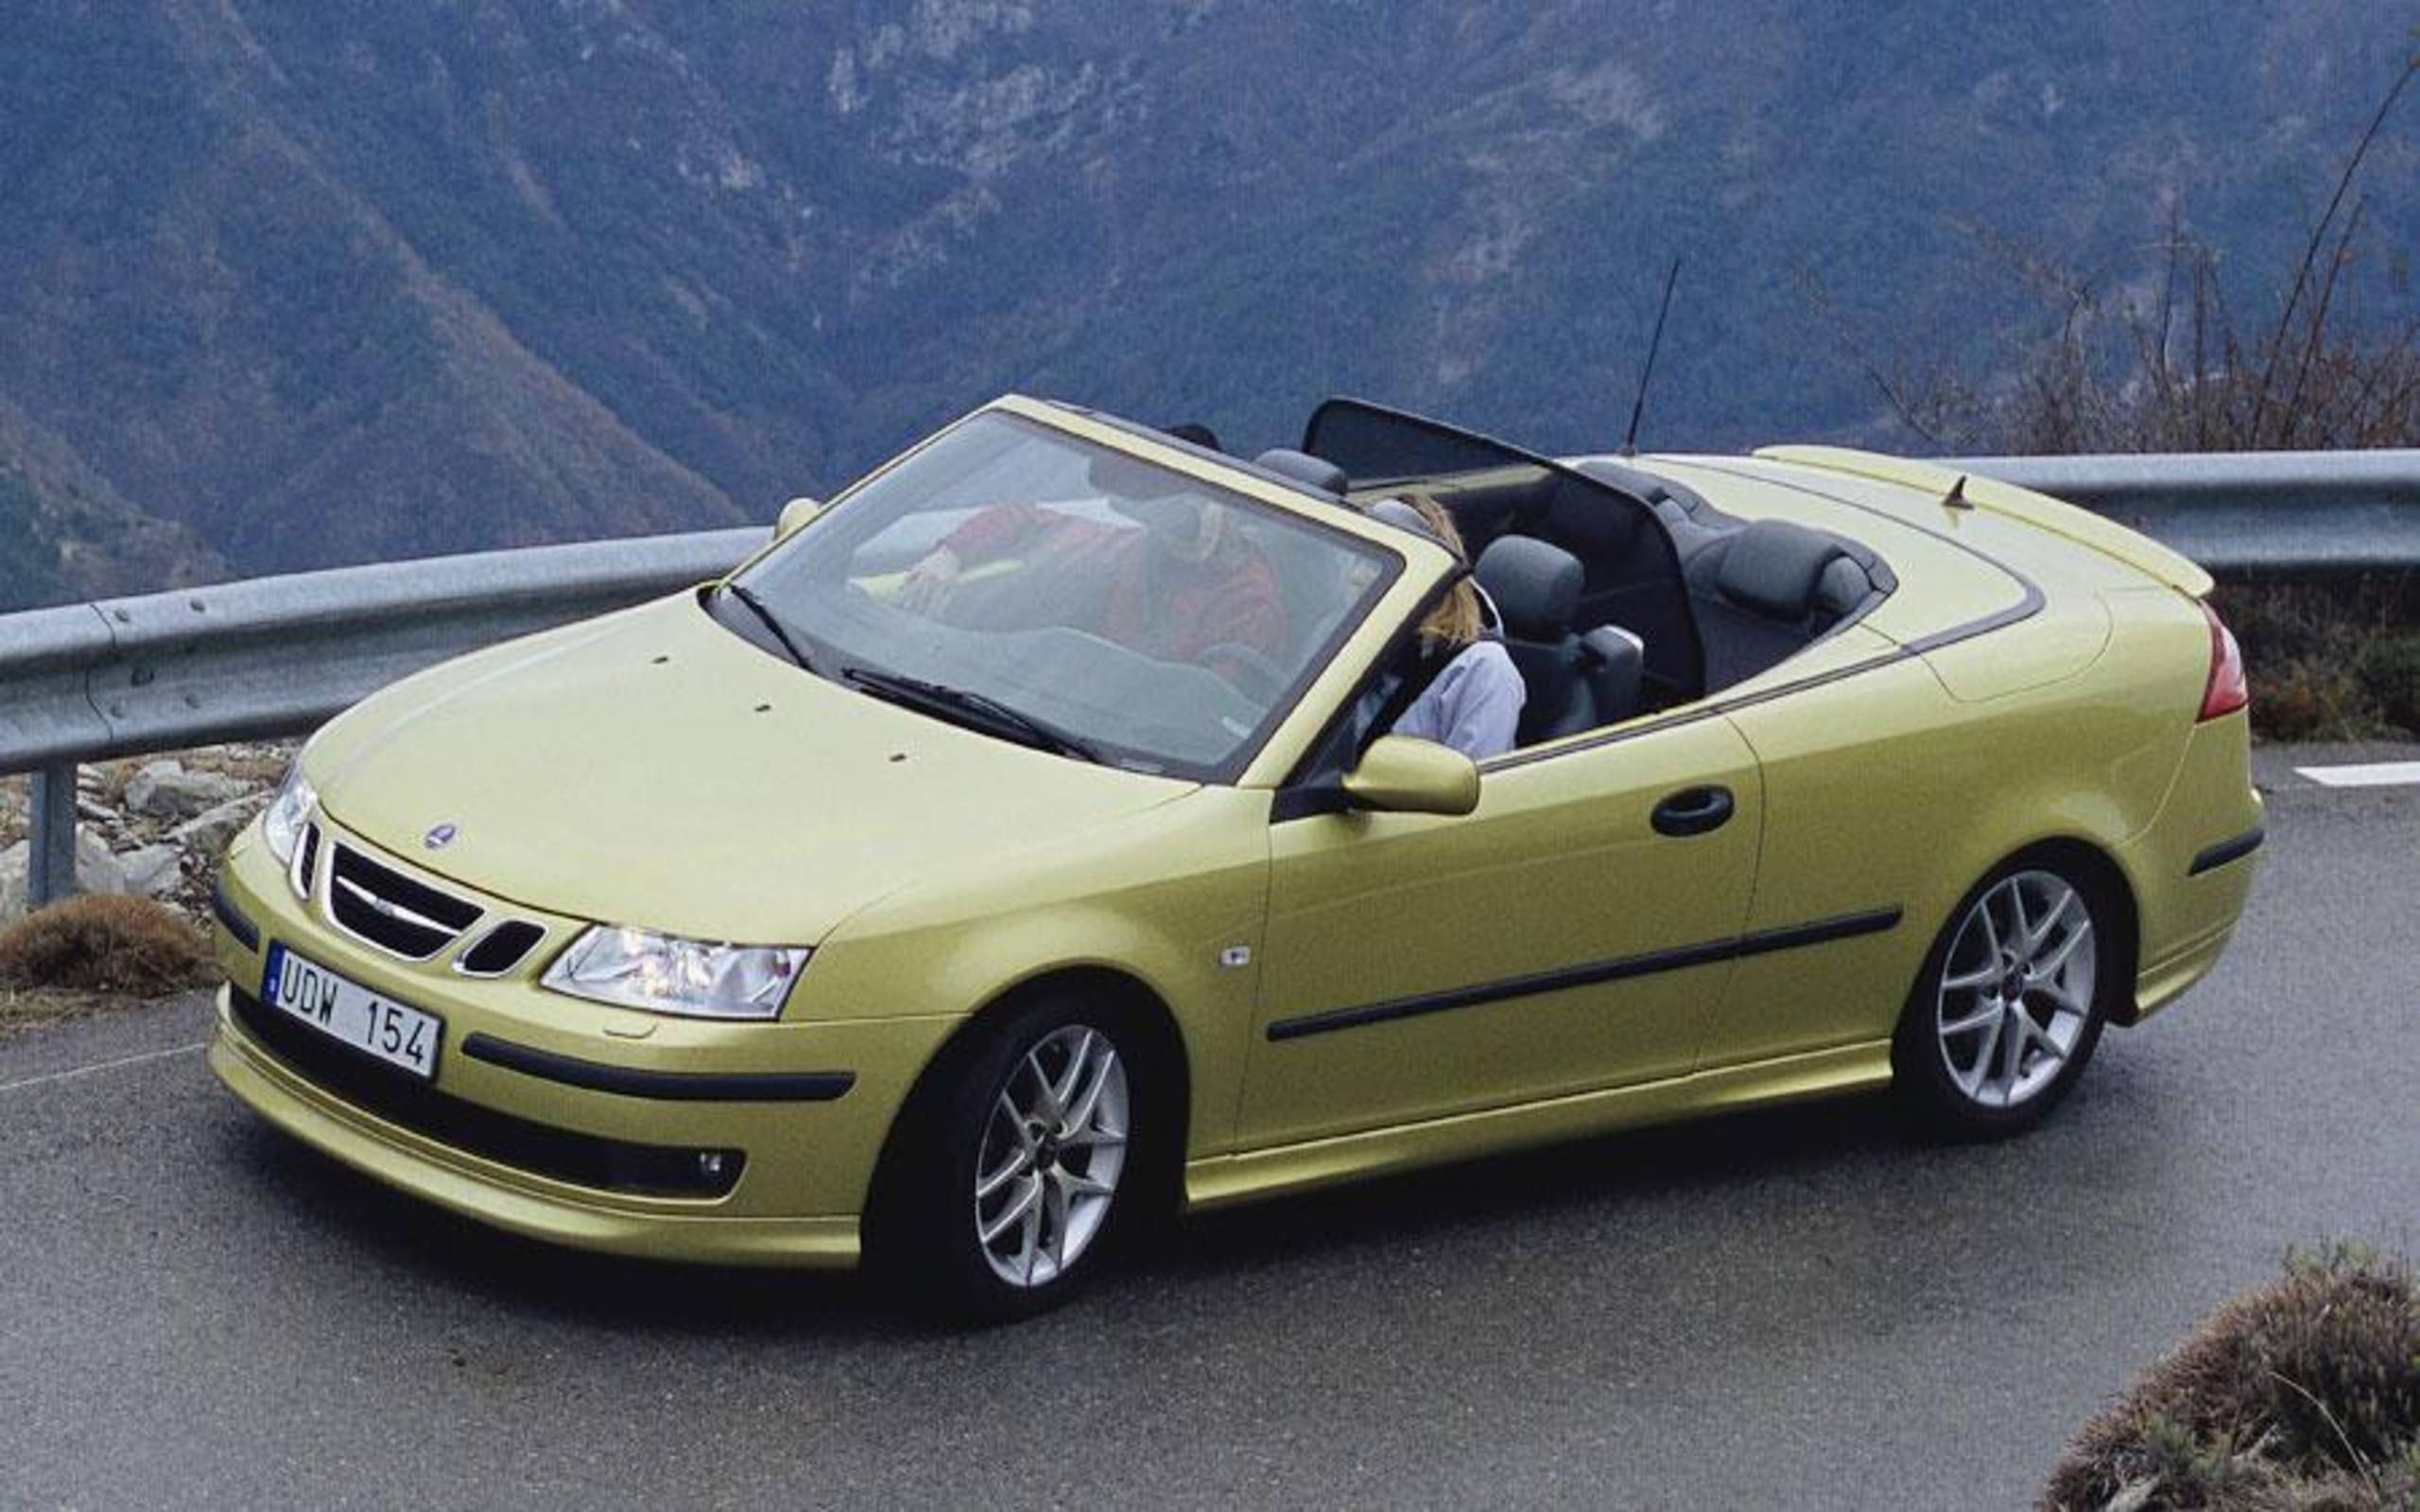 Ten notable Saab models from historythe AutoWeek list